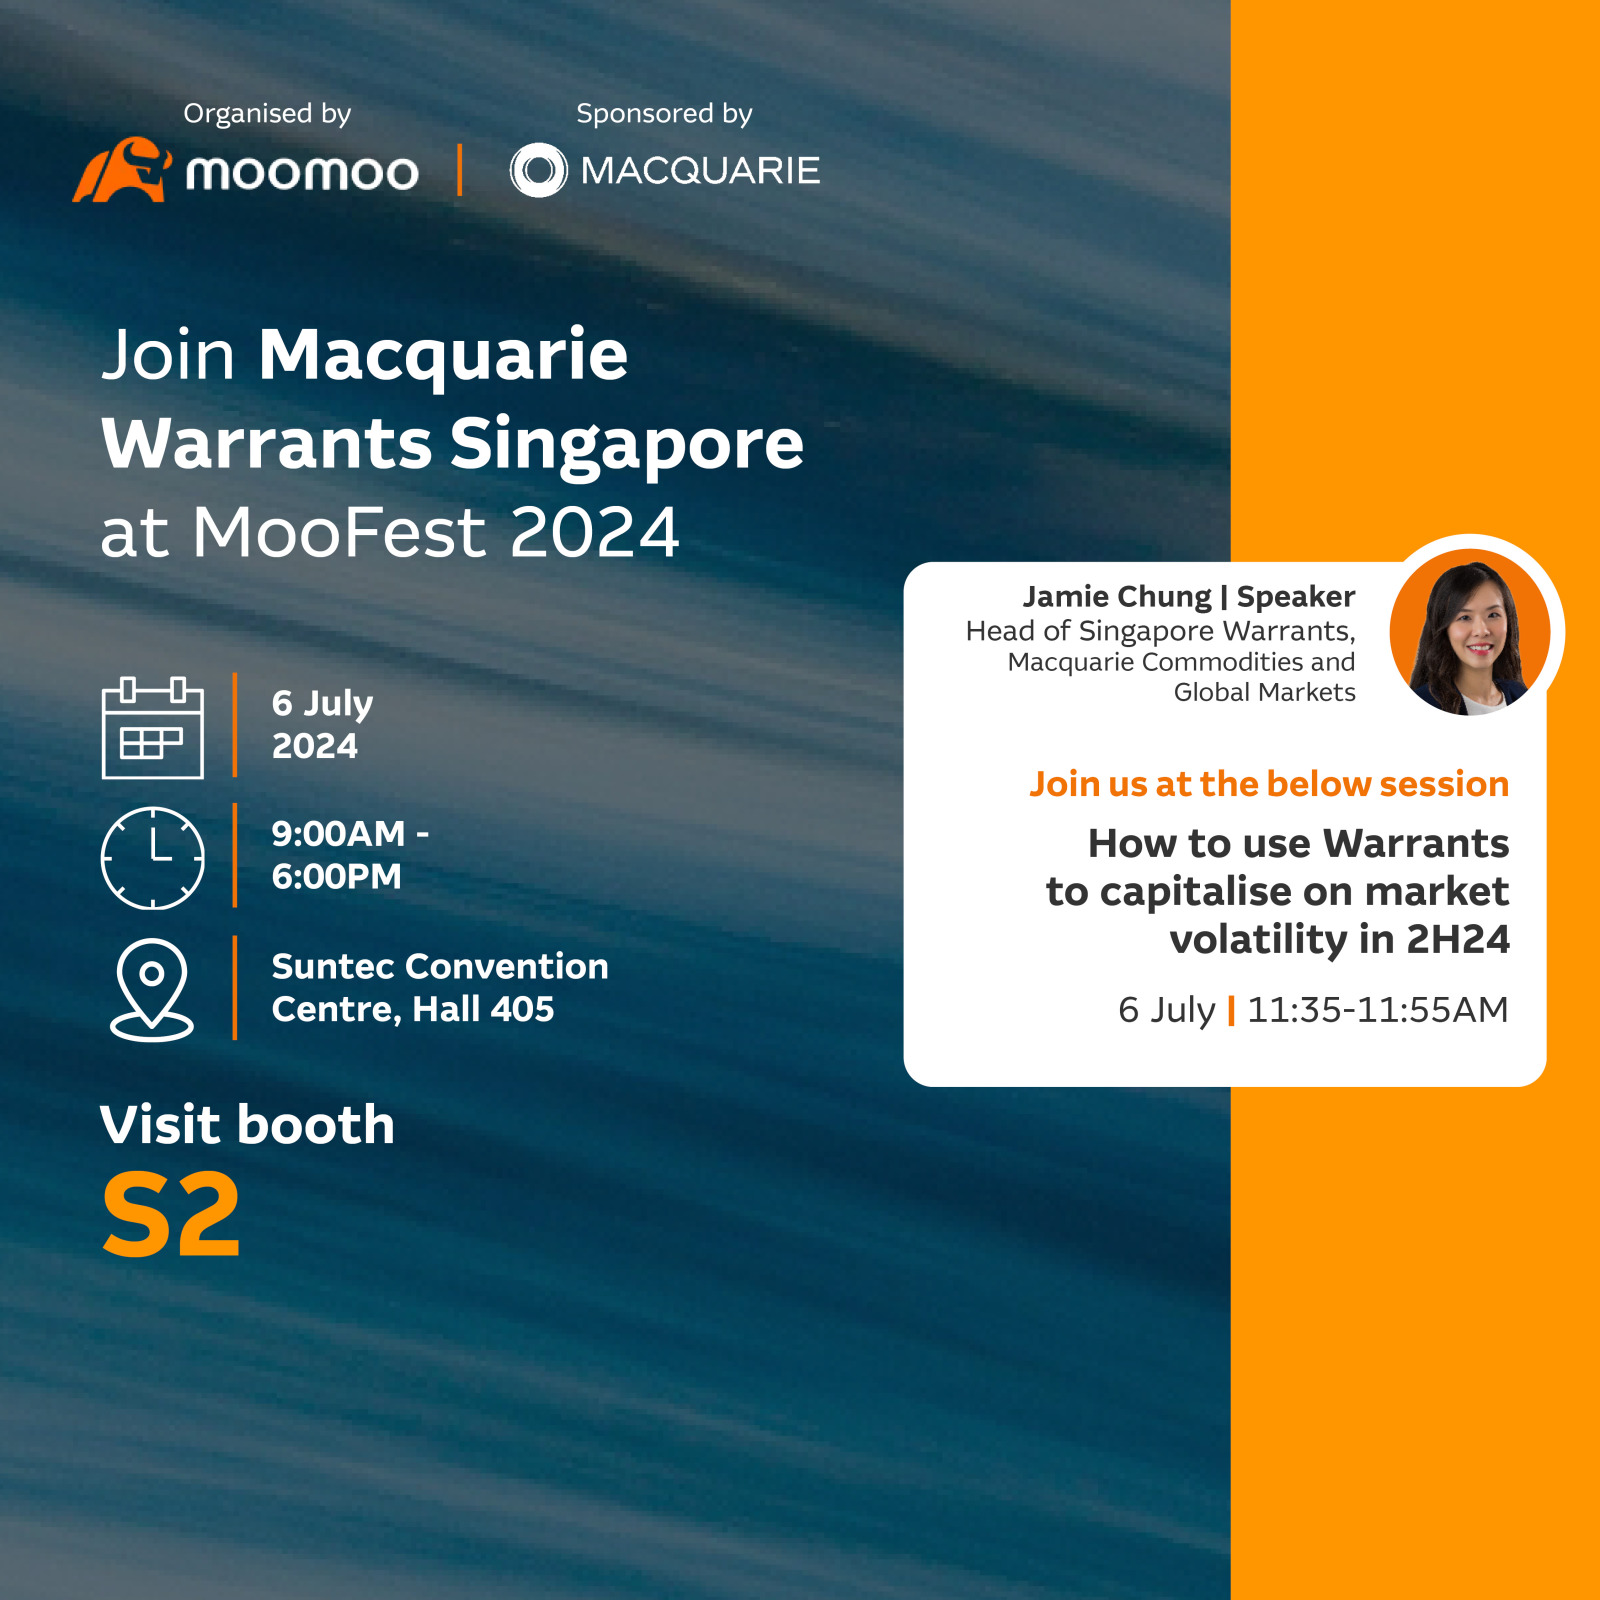 麦格理在 2024 年 Moo Fest 上为新加坡认股权证！